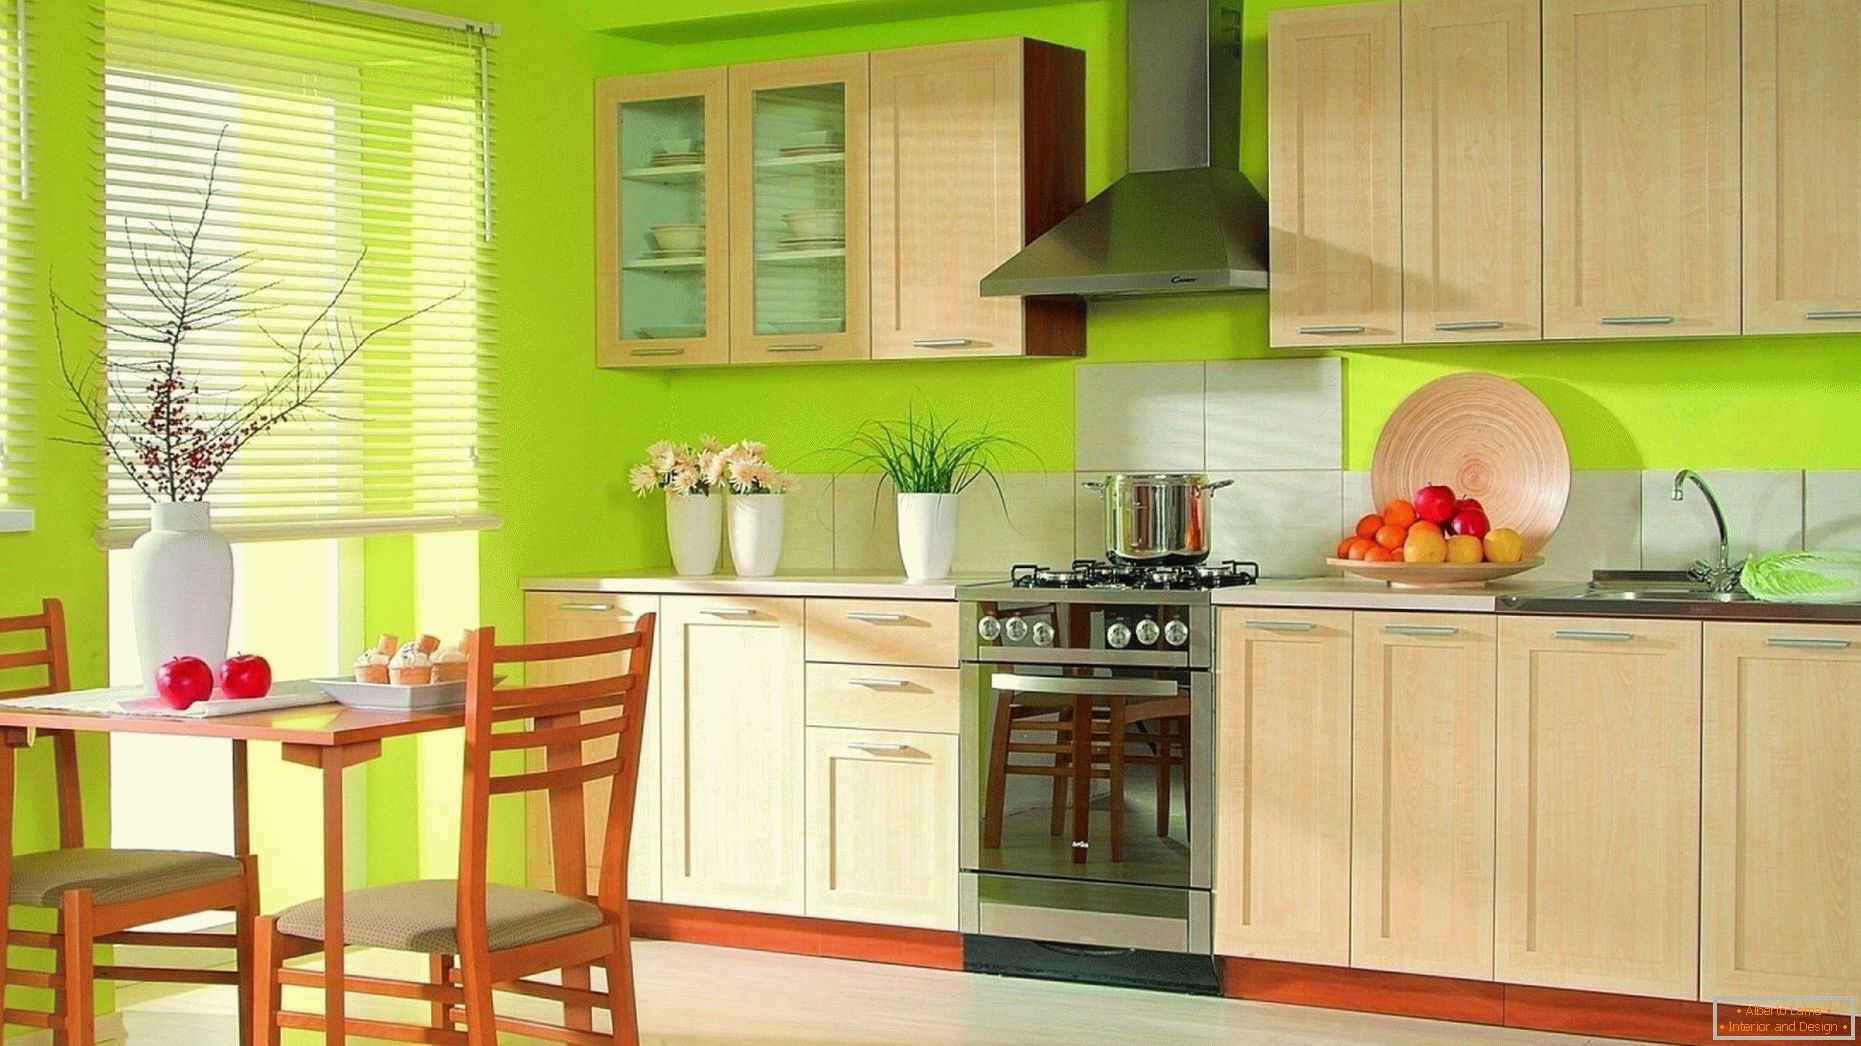 Design de bucatarie cu culori contrastante